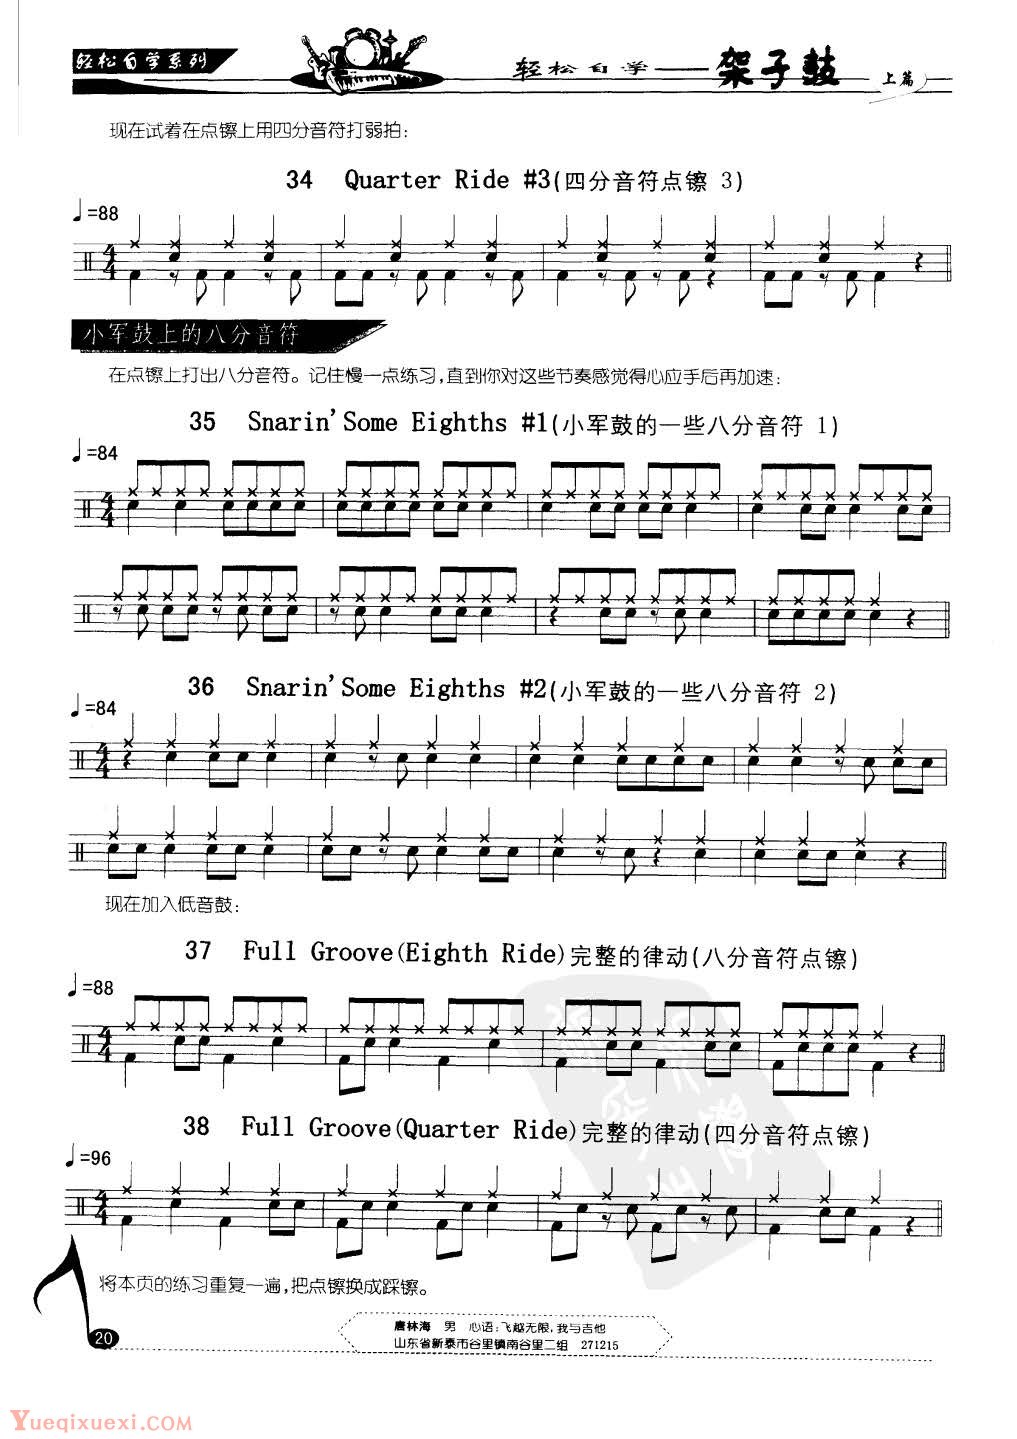 轻松自学架子鼓[上篇]第六课:八分音符节奏型